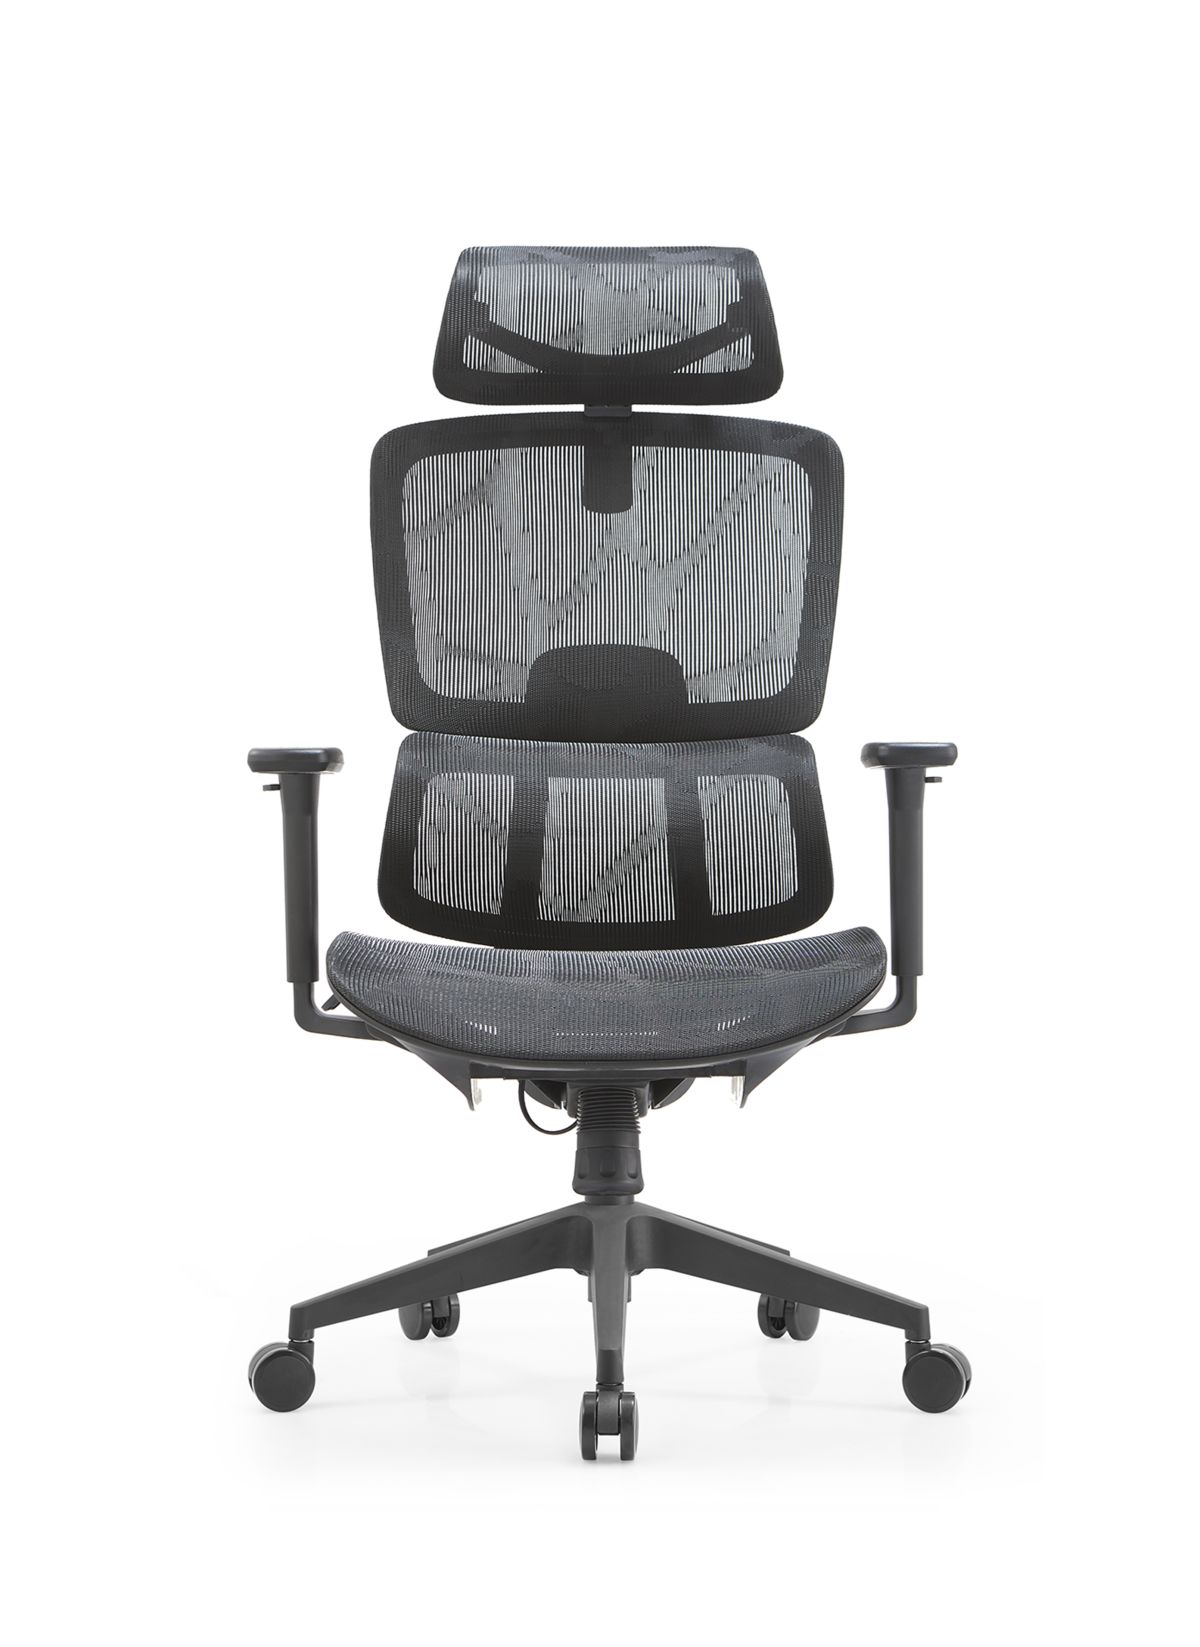 Krzesło ergonomiczne Hermana Millera (1)